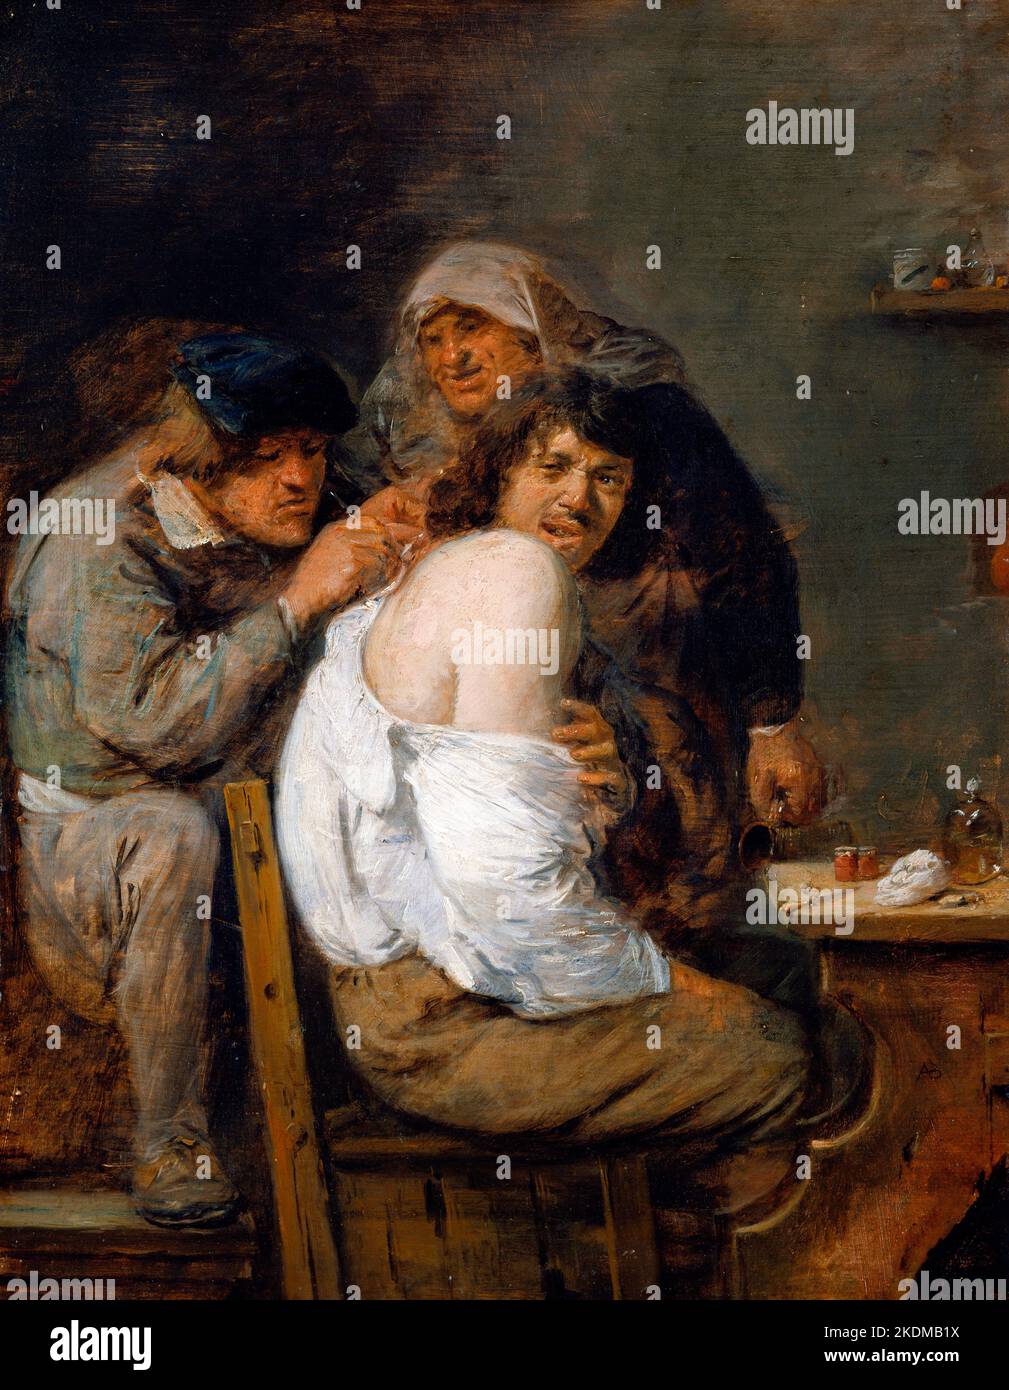 La Operación de Regreso por el artista barroco flamenco Adriaen Brouwer (c. 1605-1638), aceite sobre panel, c. 1636 Foto de stock